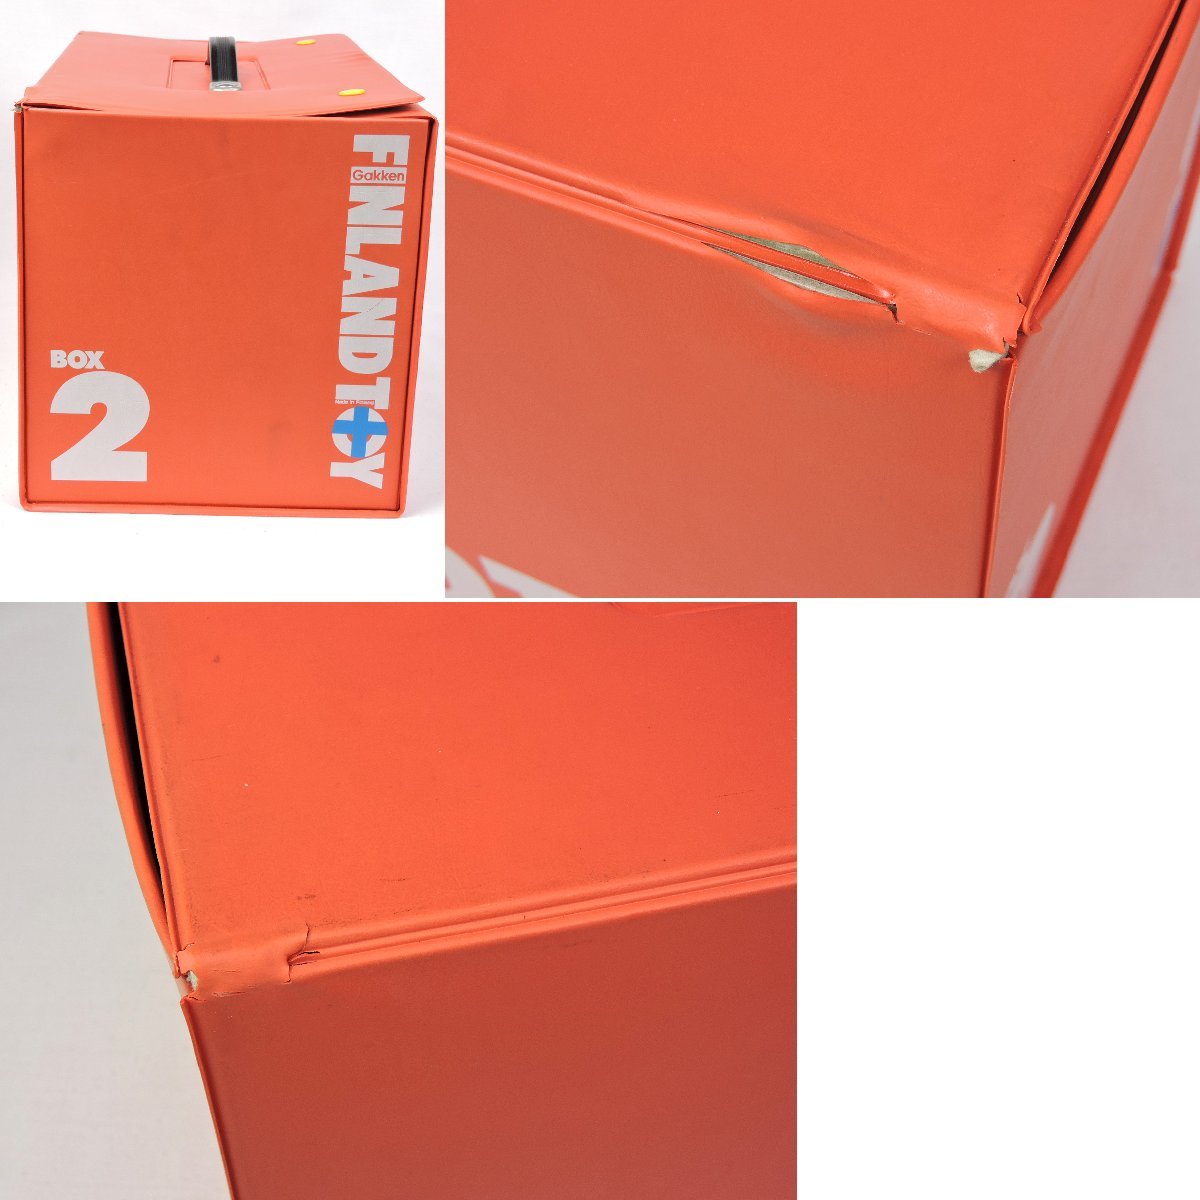 【中古】FINLAND TOY BOX1-3 セット 学研心身発達トーイシリーズ 北欧 フィンランド製 木製トイ_BOX2